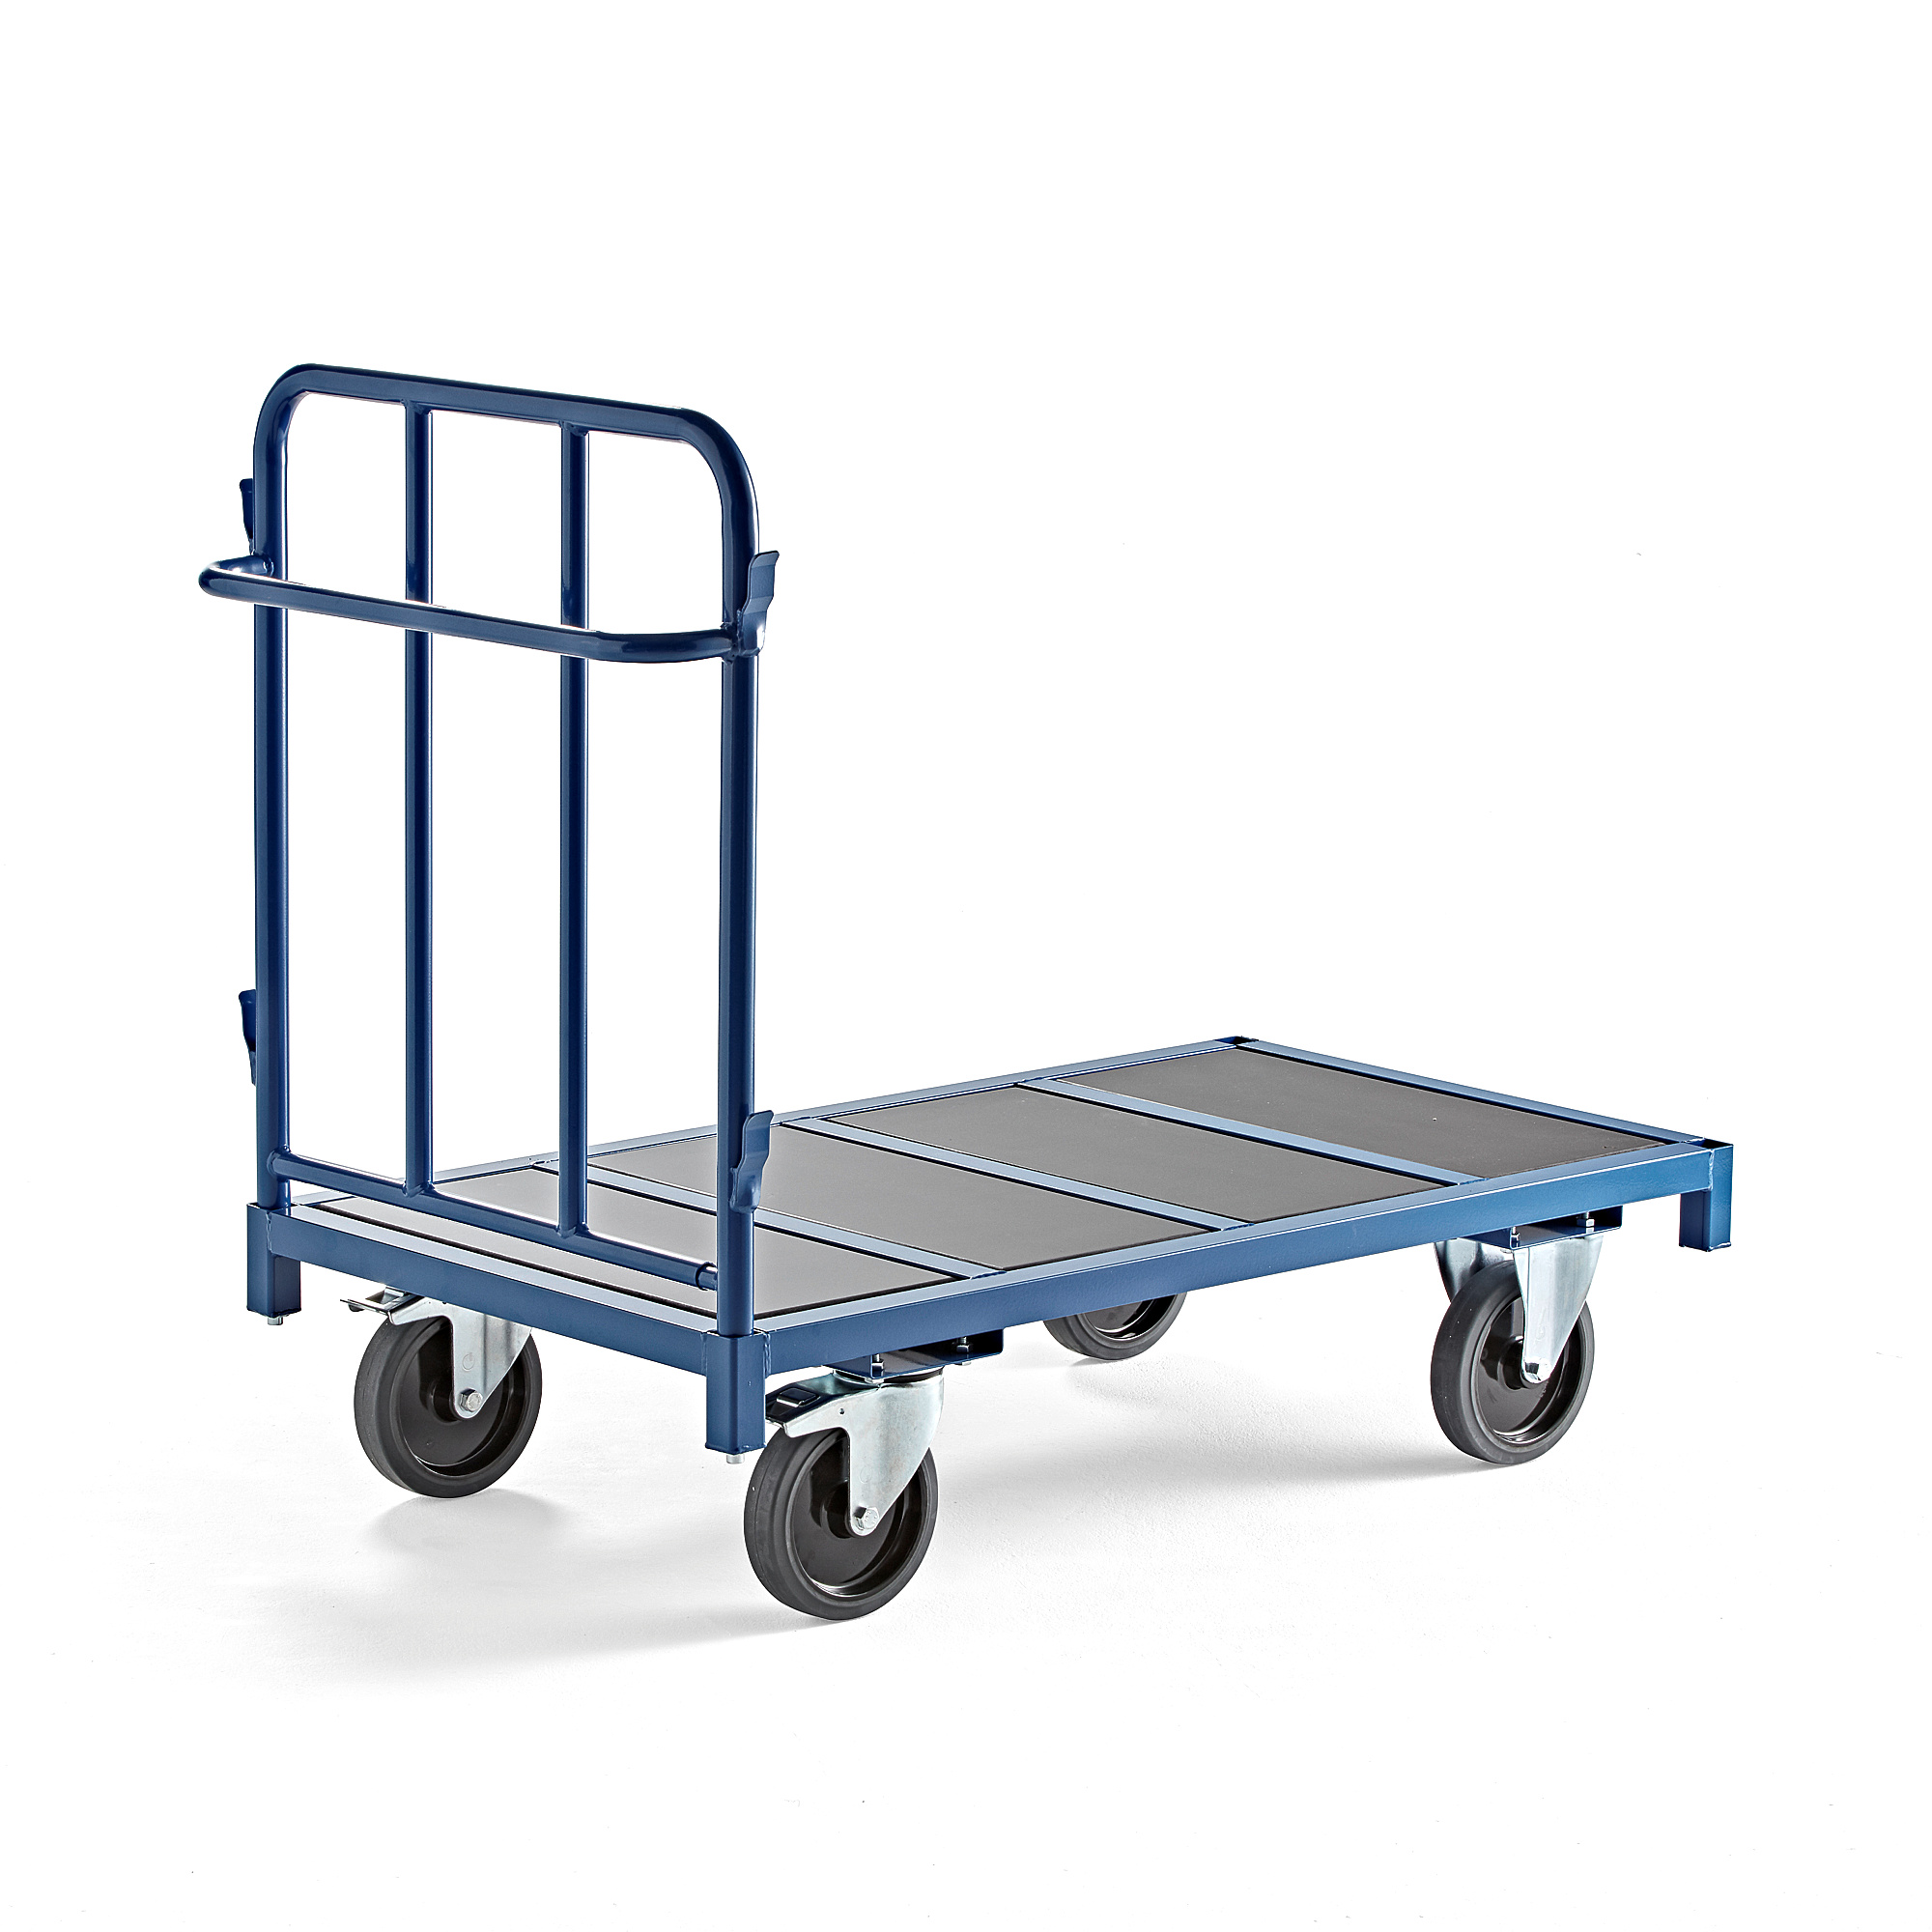 E-shop Plošinový vozík EMBARK, 1300x700 mm, 1200 kg, modrý